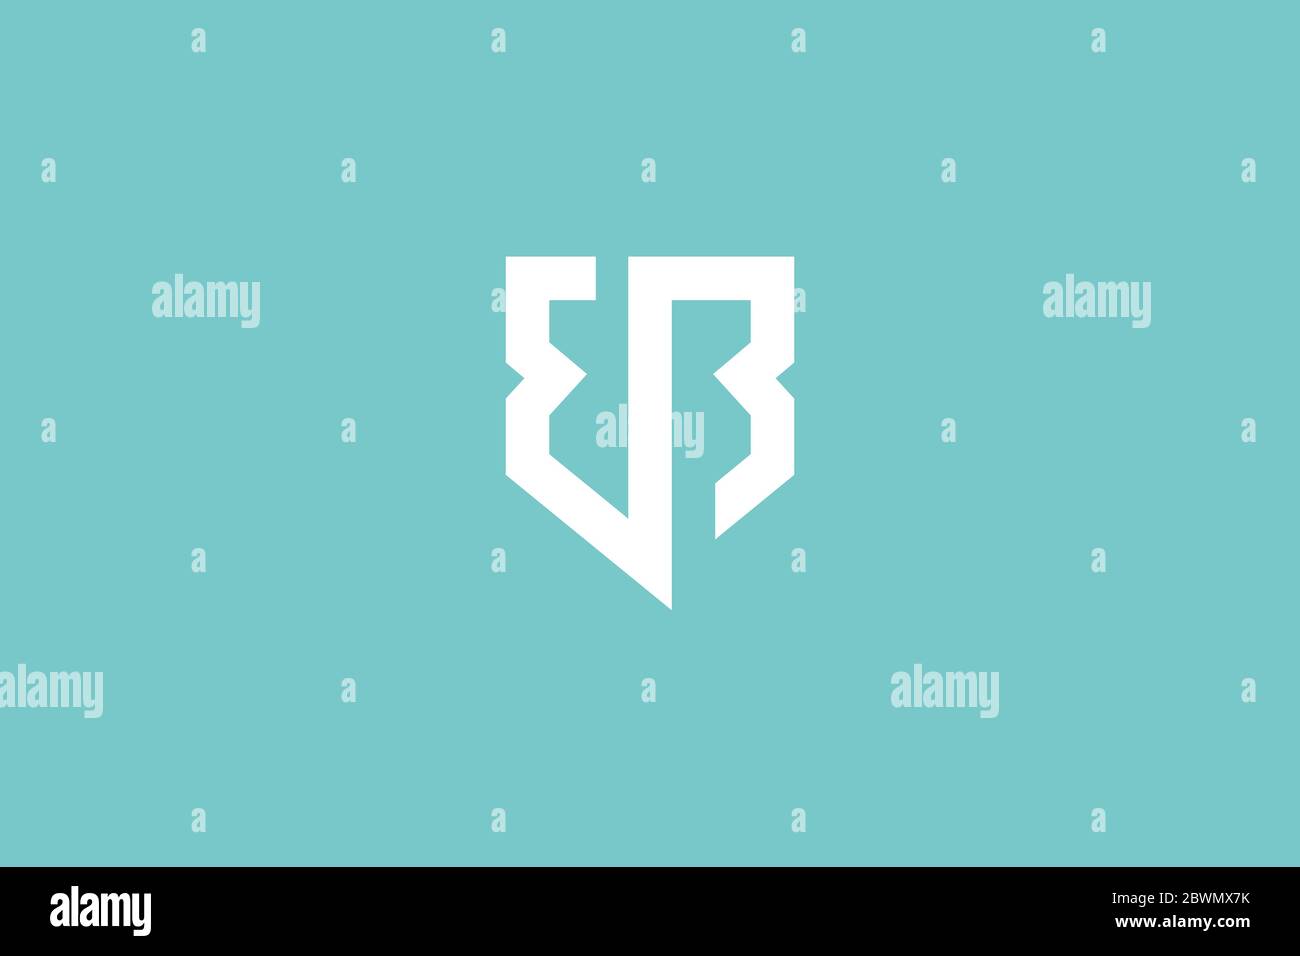 eb logo design . lettre abstraite eb dans le bouclier avec le style propre et moderne du logo . illustration vectorielle eps10 Illustration de Vecteur